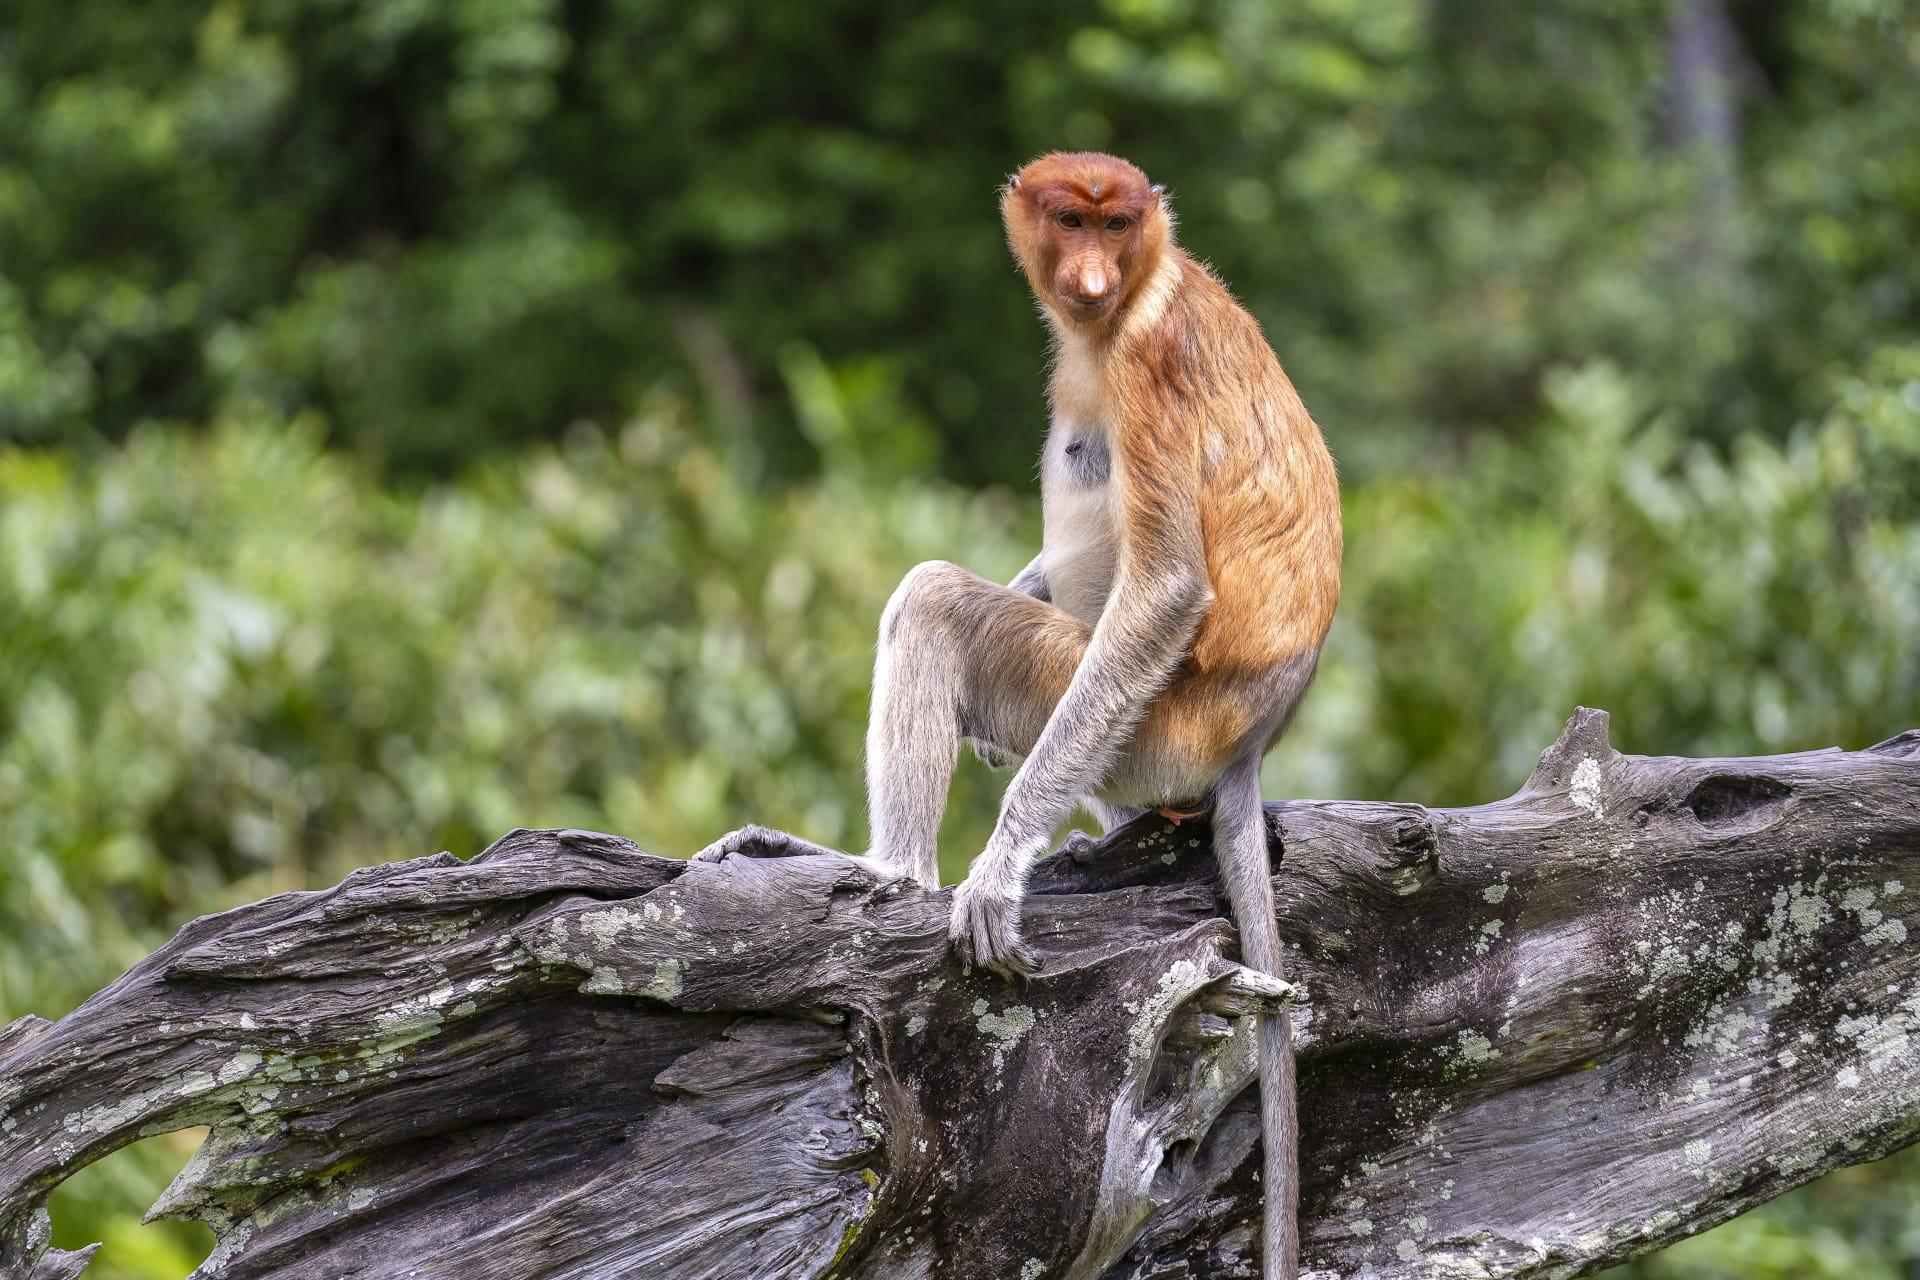 Proboscis monkey pictures